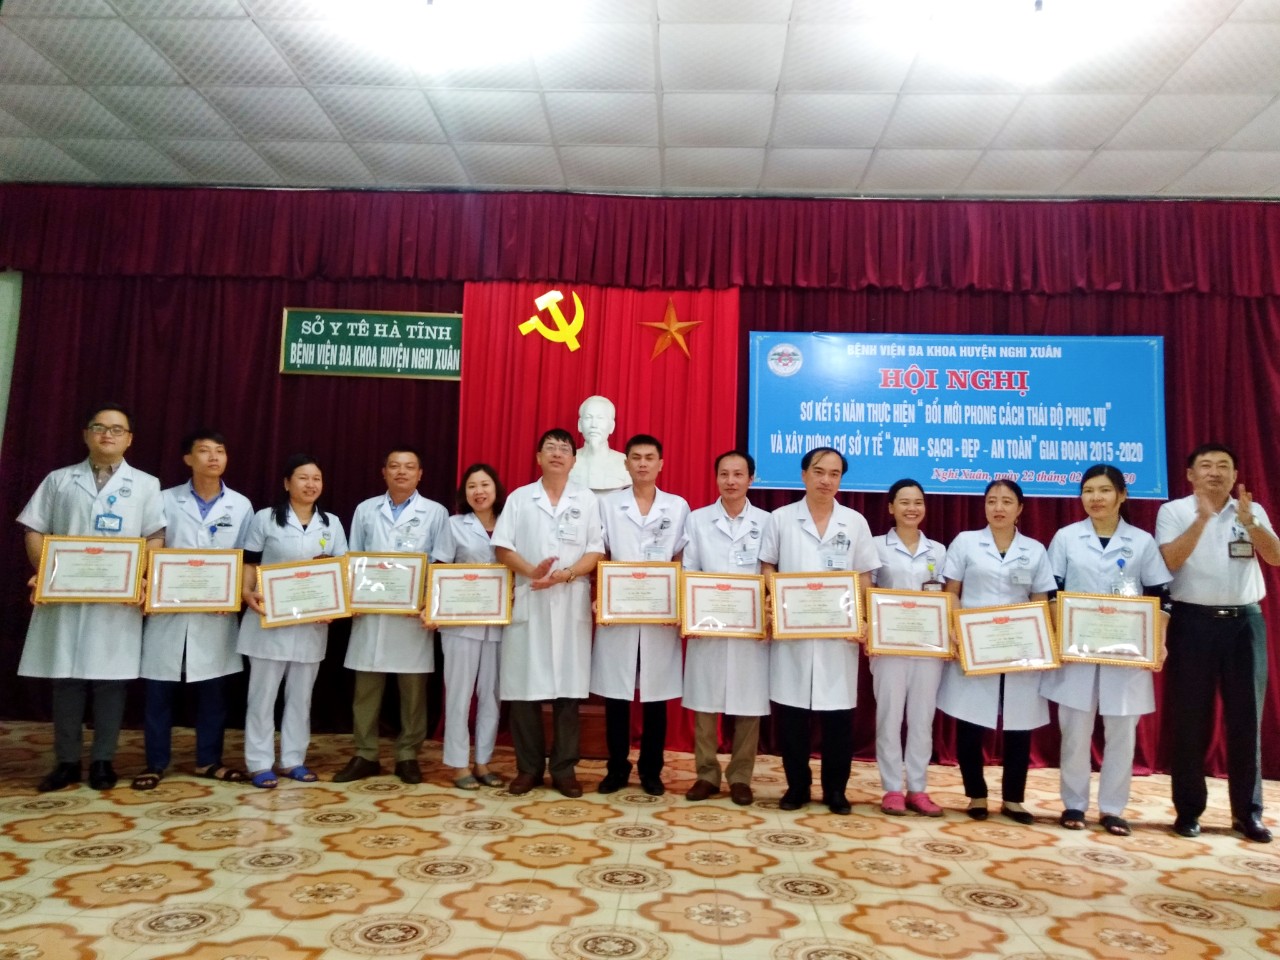 Bác sĩ CKI Hoàng Đình Ngọc trao tặng cá nhân đạt danh hiệu Chiến sĩ thi đua năm 2019